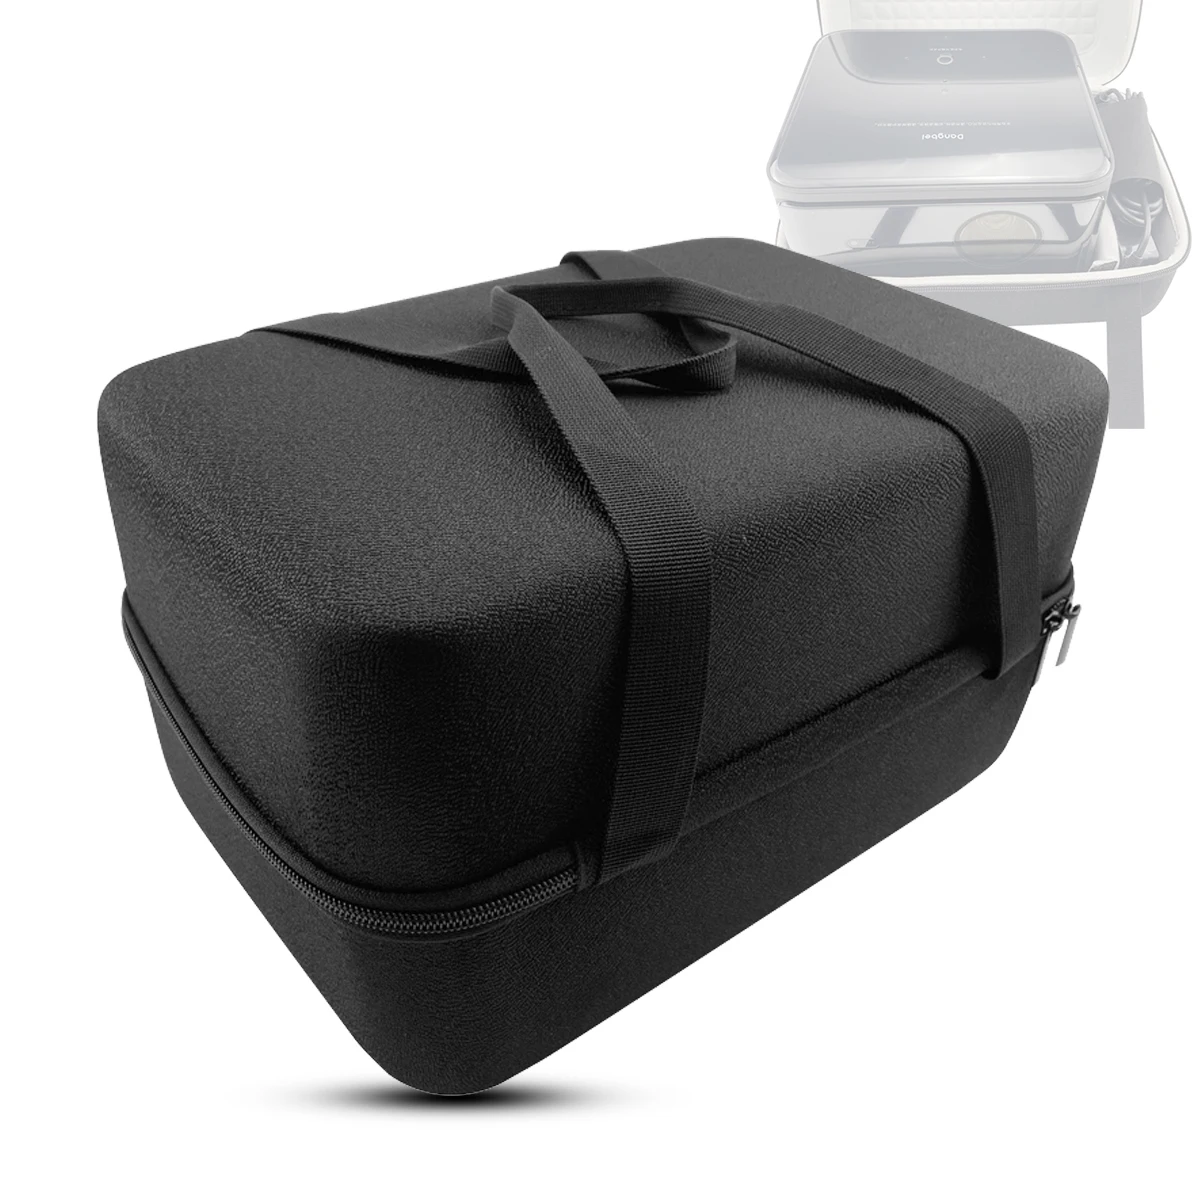 

Жесткий чехол из ЭВА для проектора DangBei X3, защитная коробка для проектора, аксессуары для проектора, портативный чехол для офиса и путешеств...